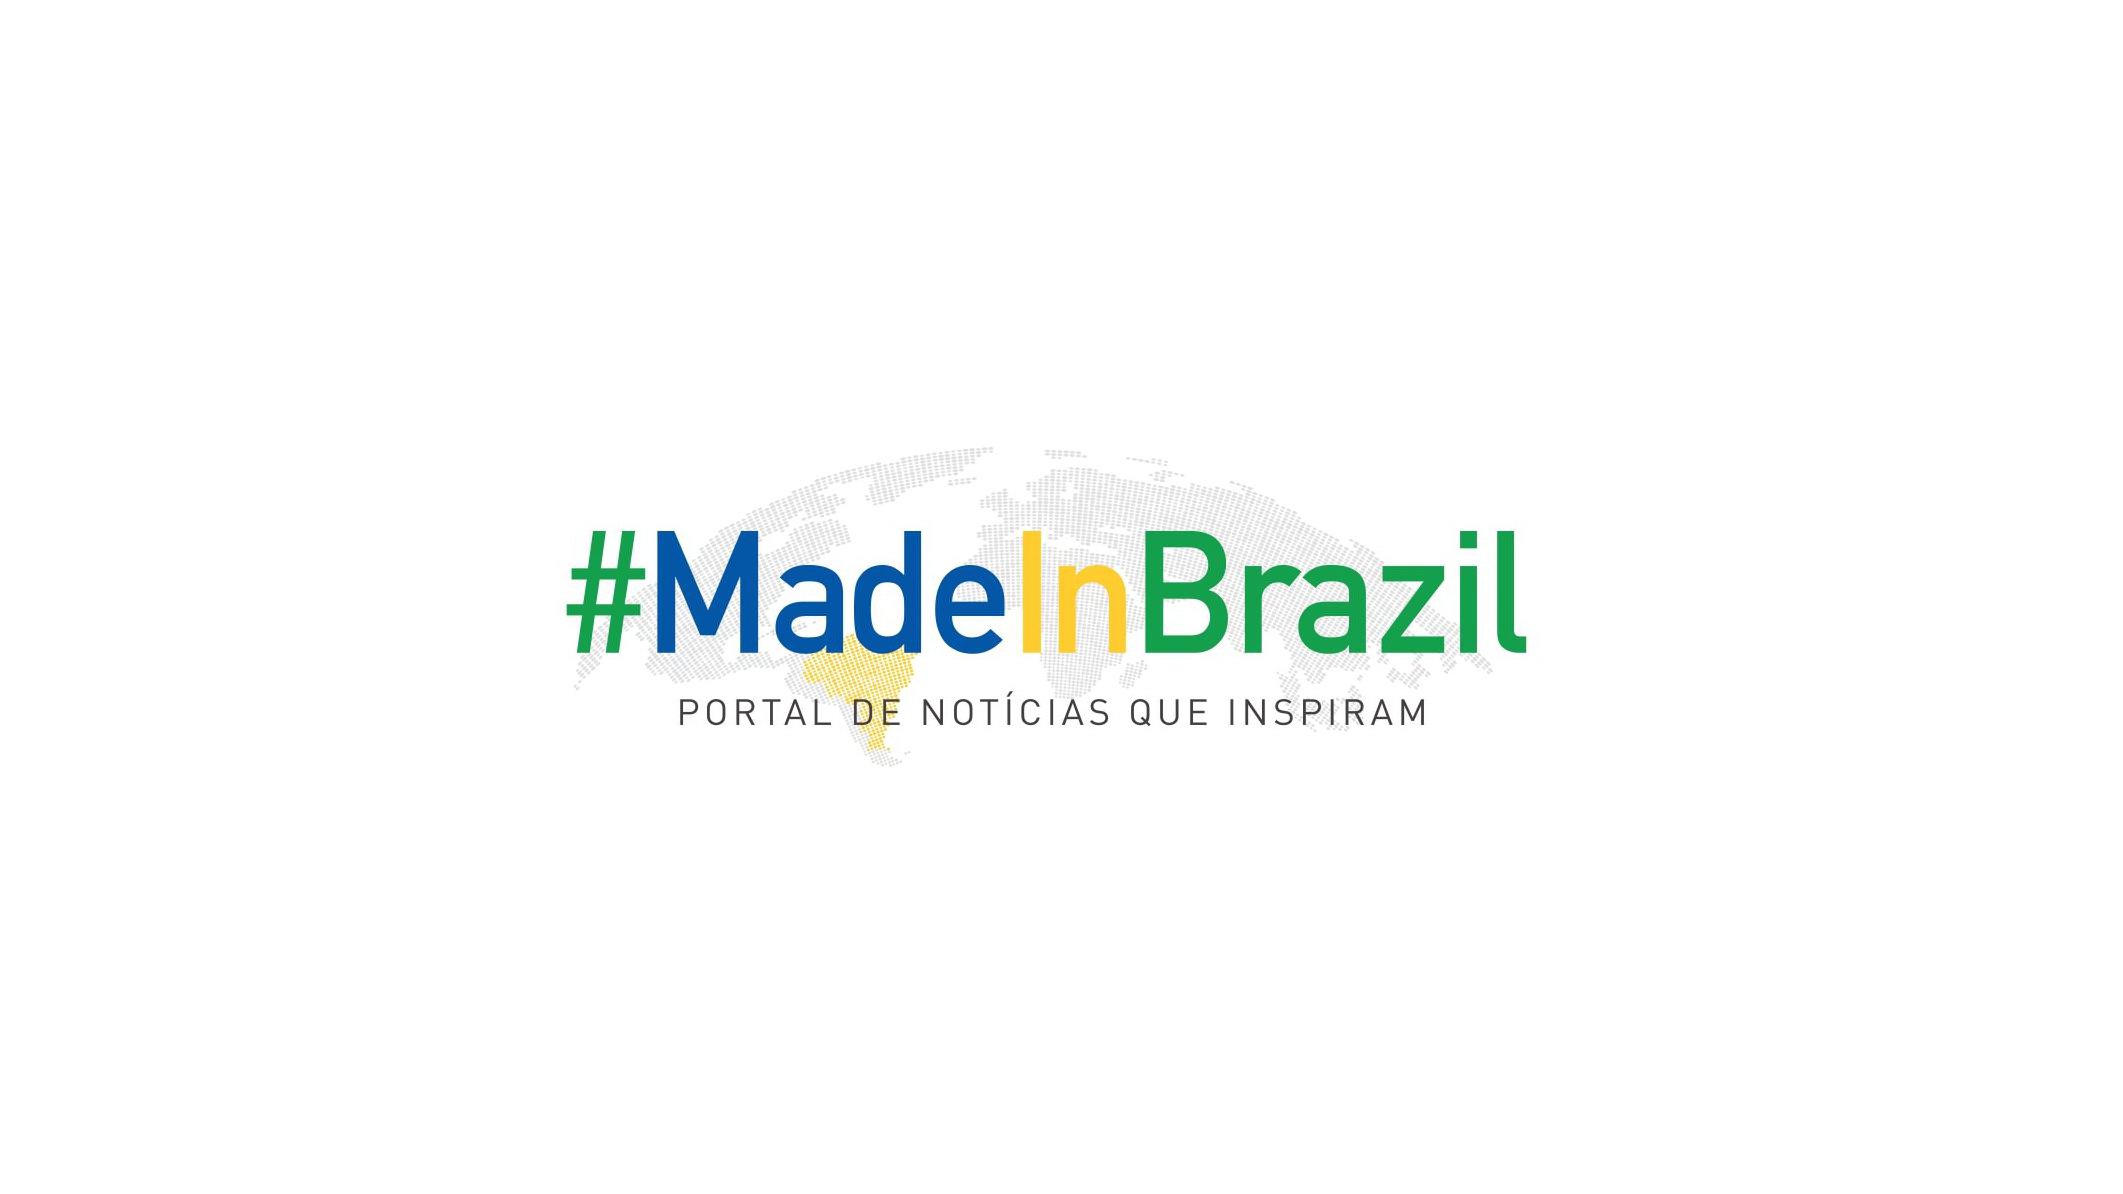 Trademark Logo #MADEINBRAZIL PORTAL DE NOTÍCIAS QUE INSPIRAM